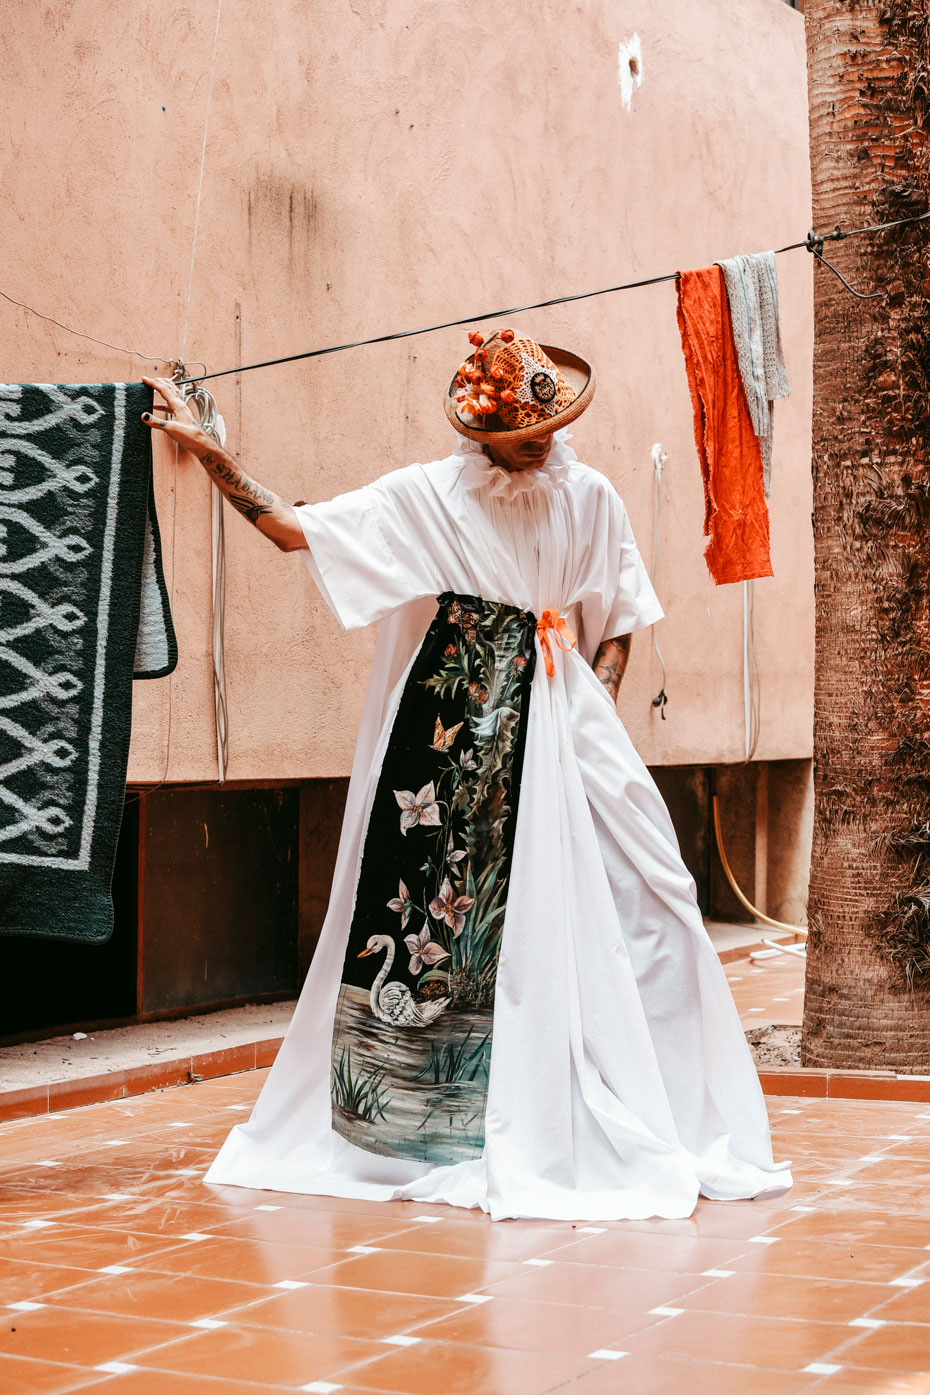 Travel | Marrakech - Enjoy Magazine